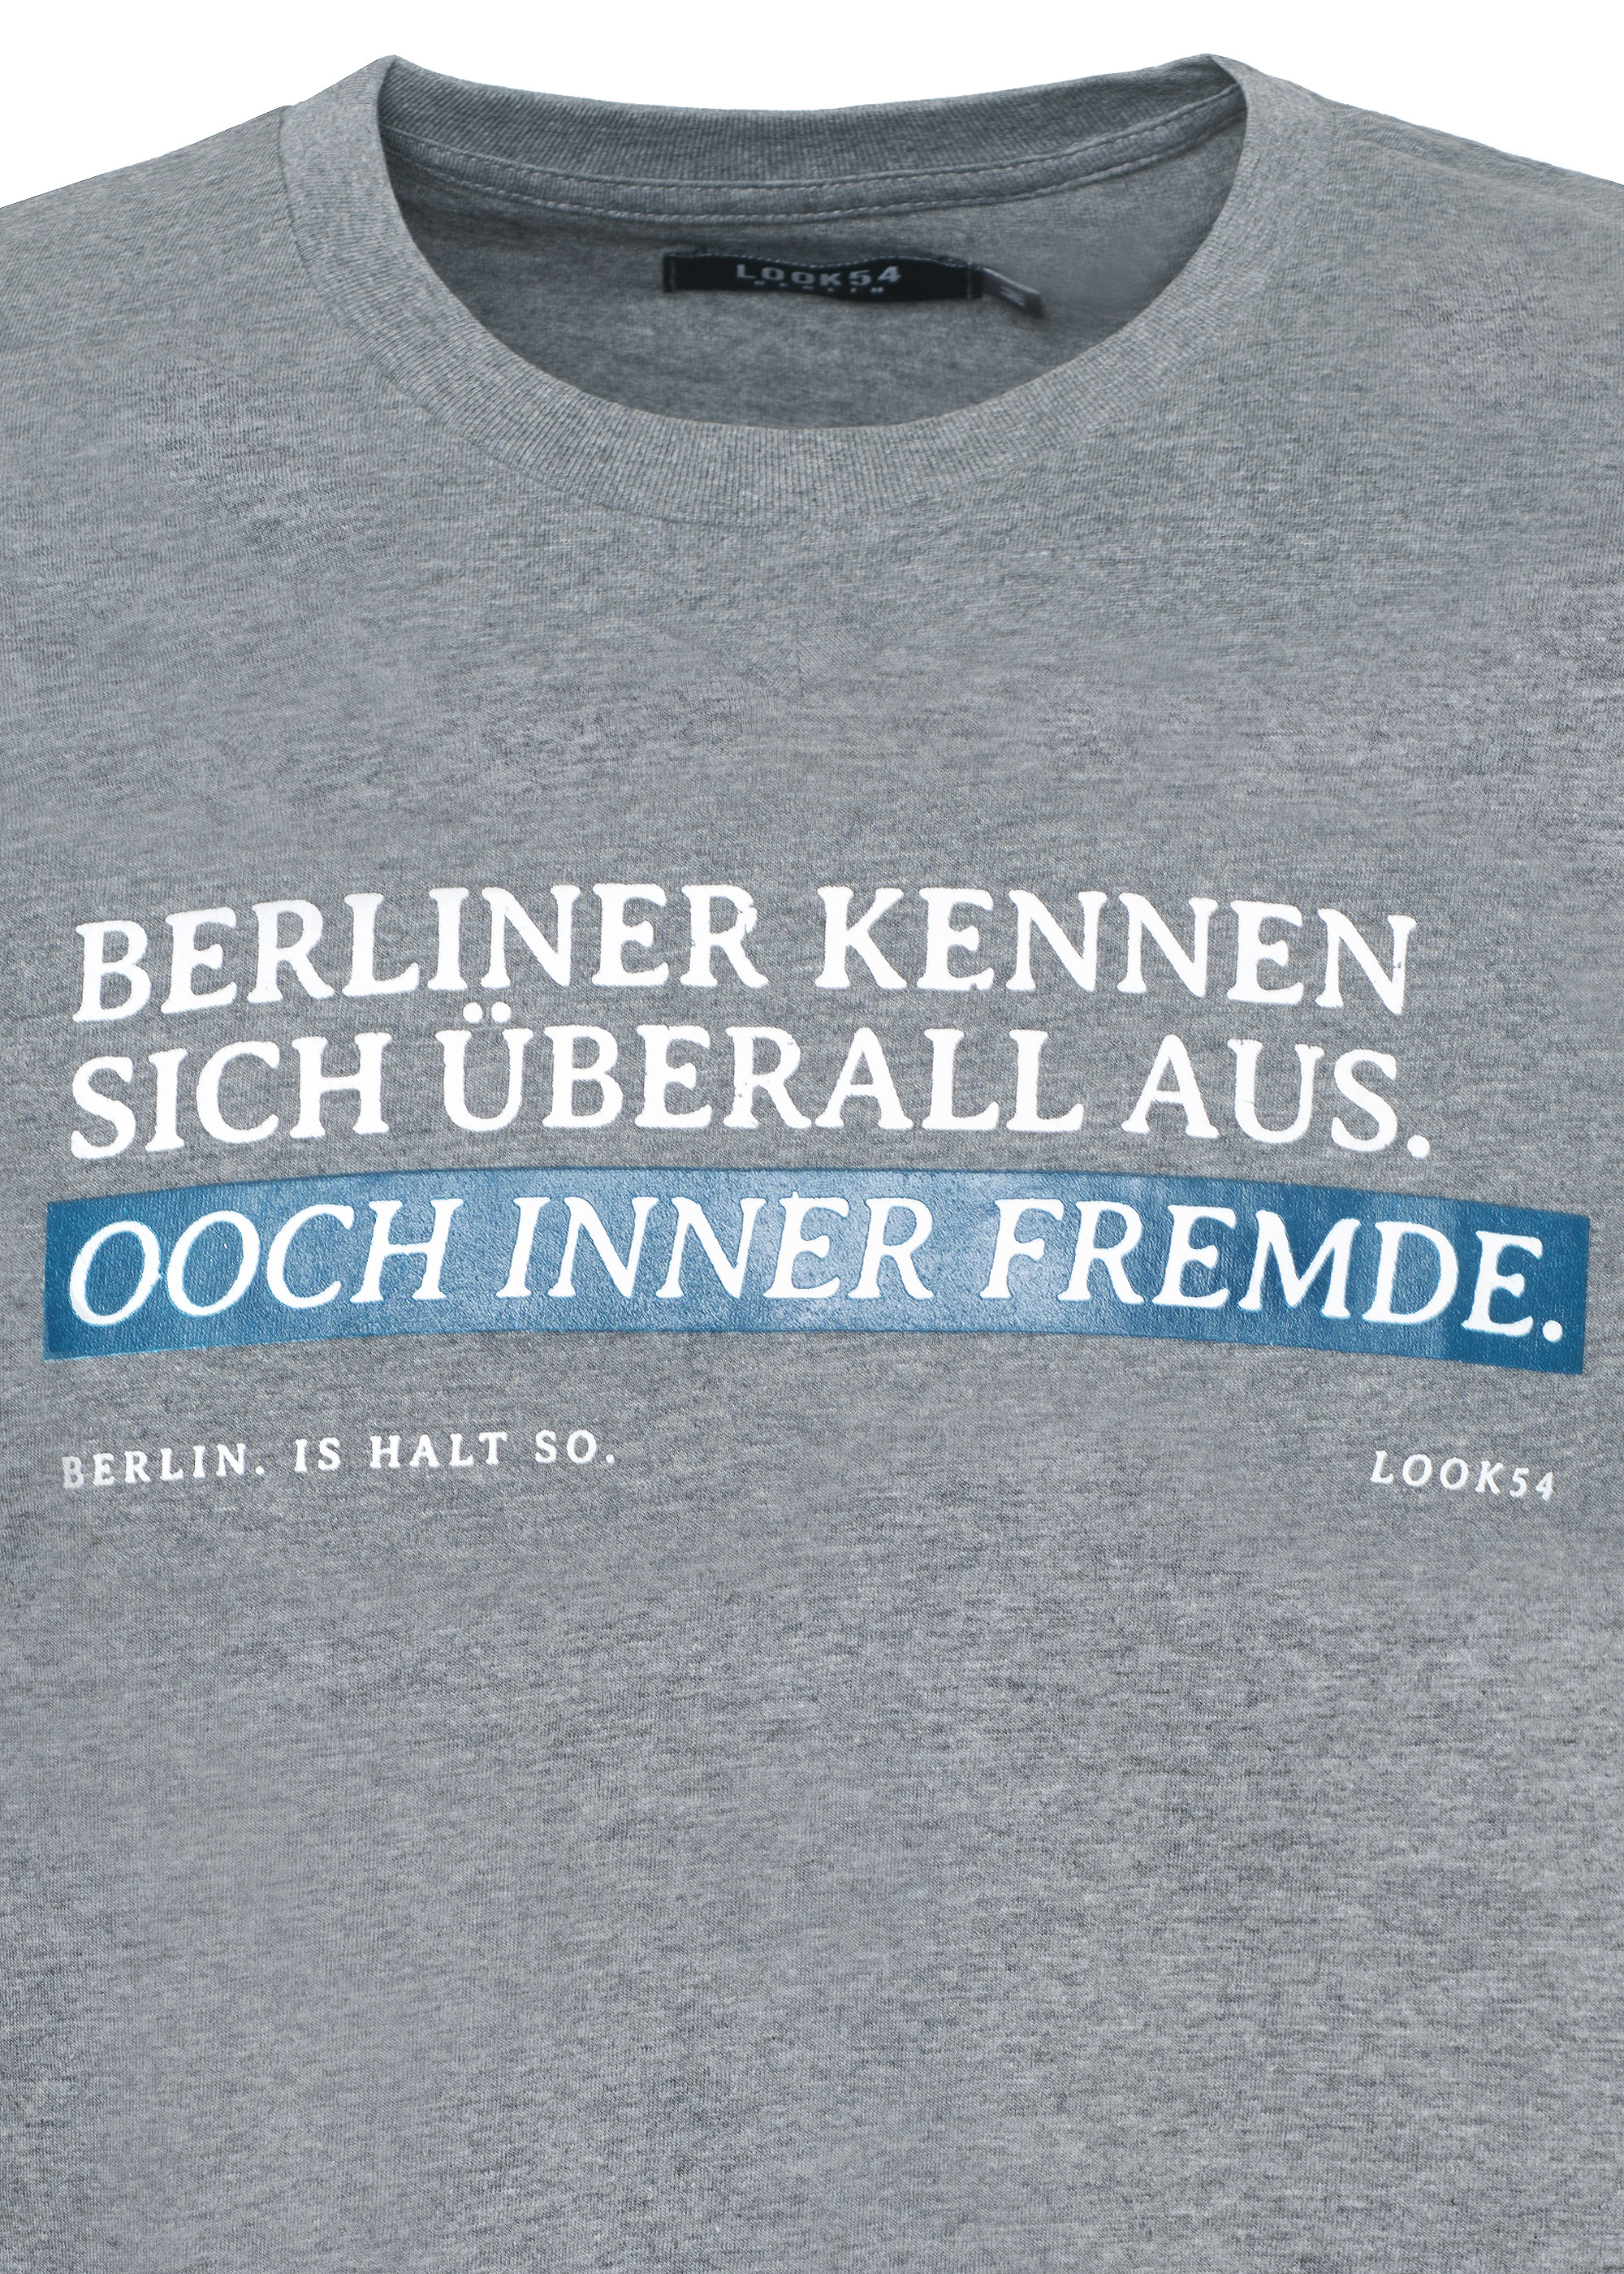 Berliner kennen sich überall aus - T-Shirt